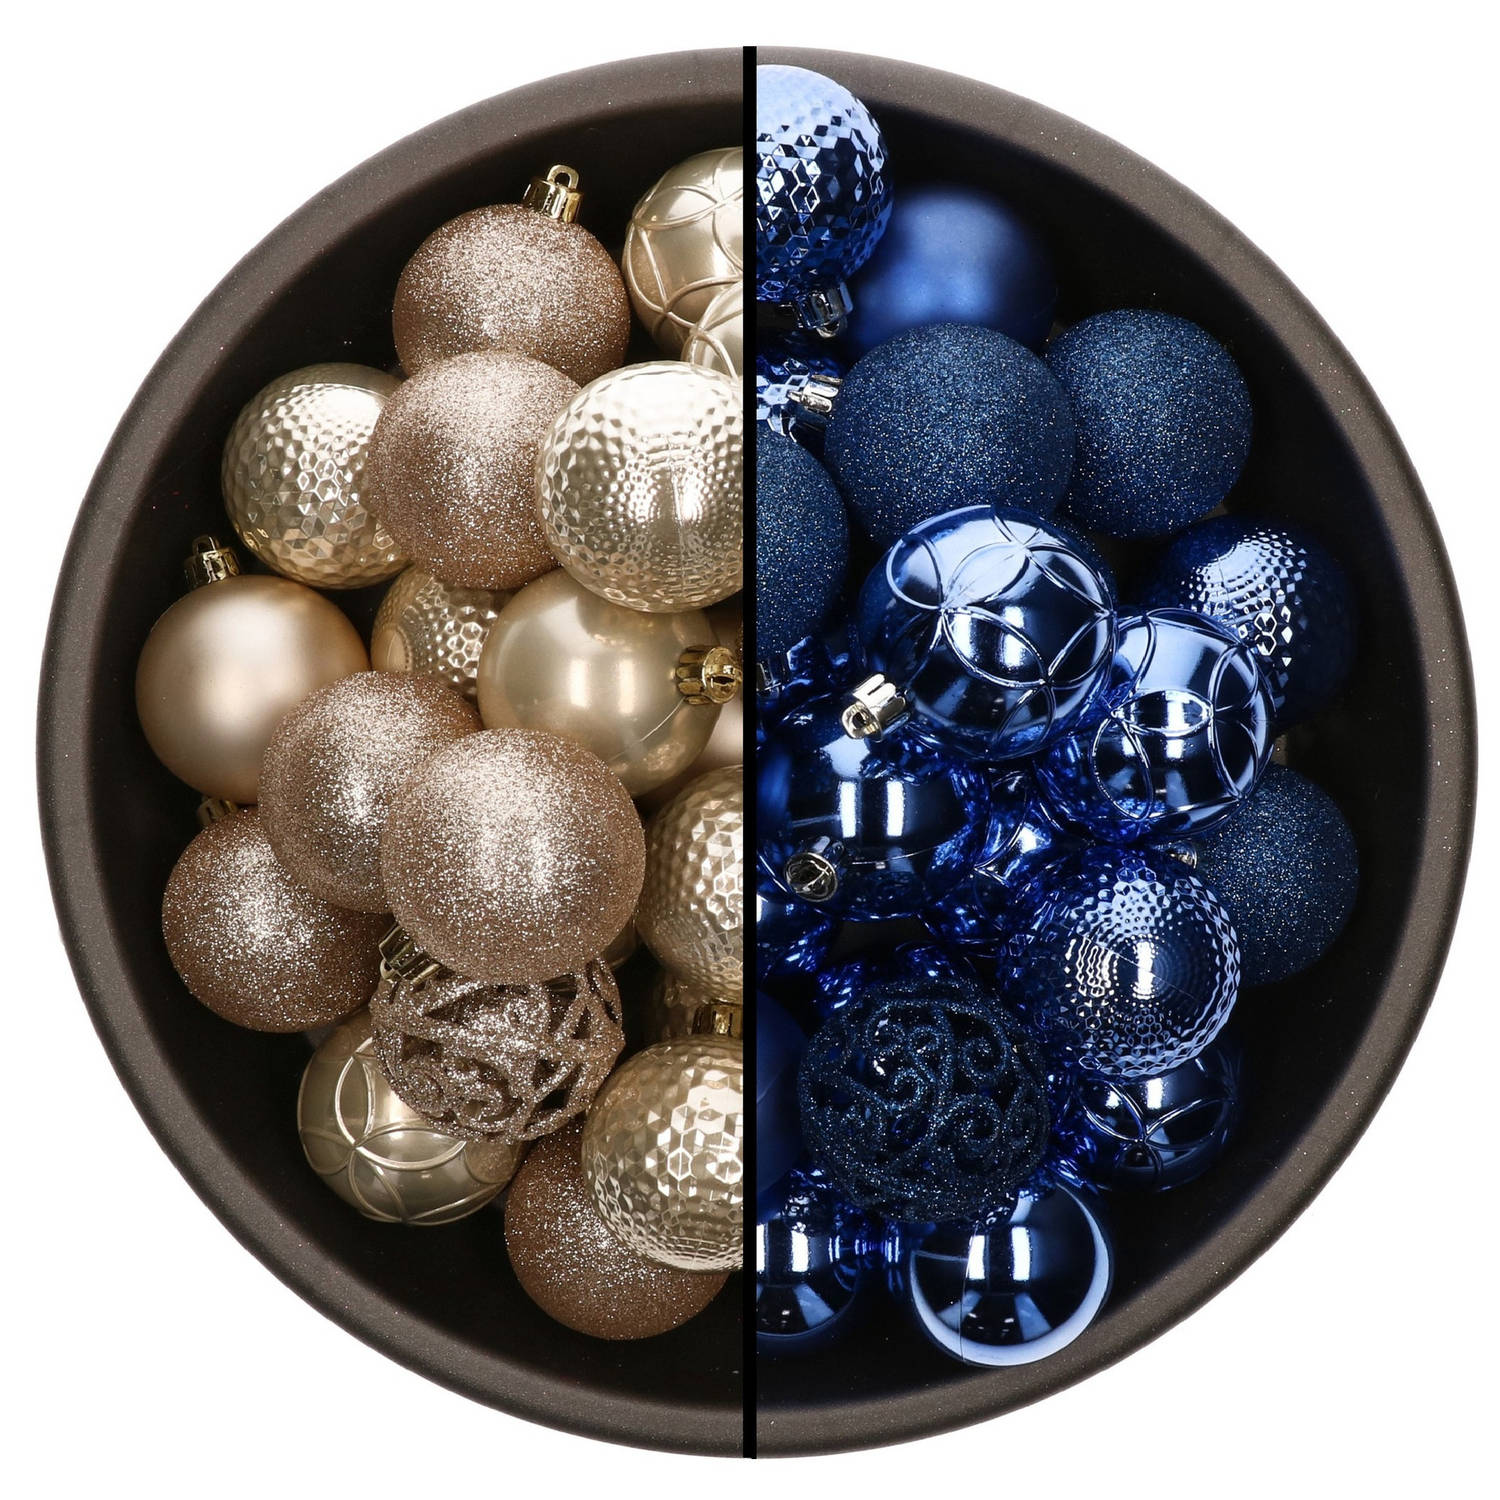 74x stuks kunststof kerstballen mix van champagne en kobalt blauw 6 cm - Kerstbal